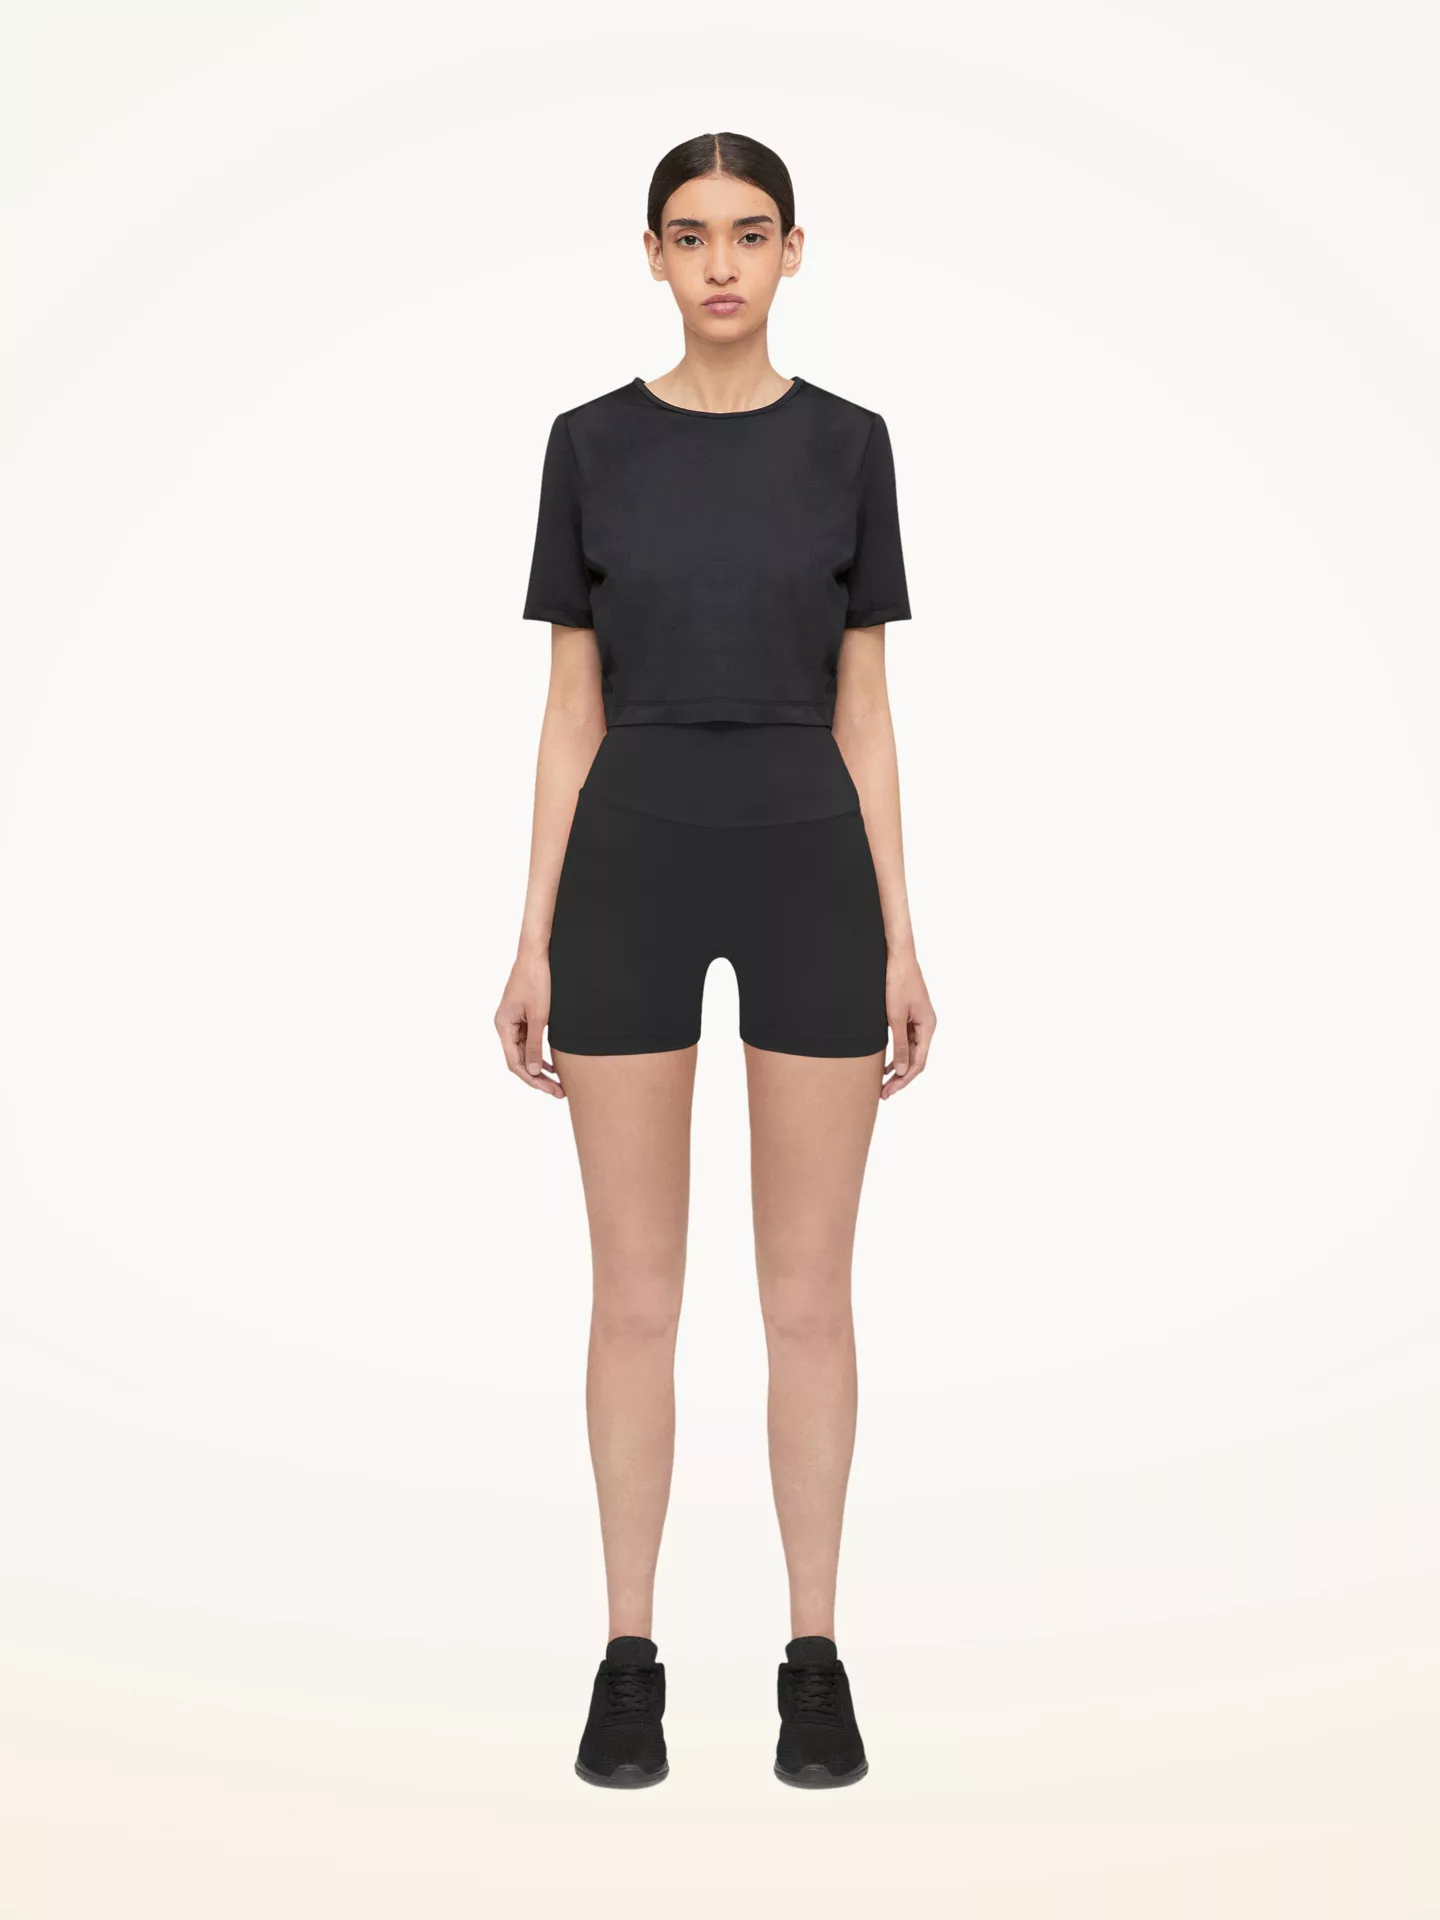 Wolford - The Workout Shorts, Frau, black, Größe: M günstig online kaufen